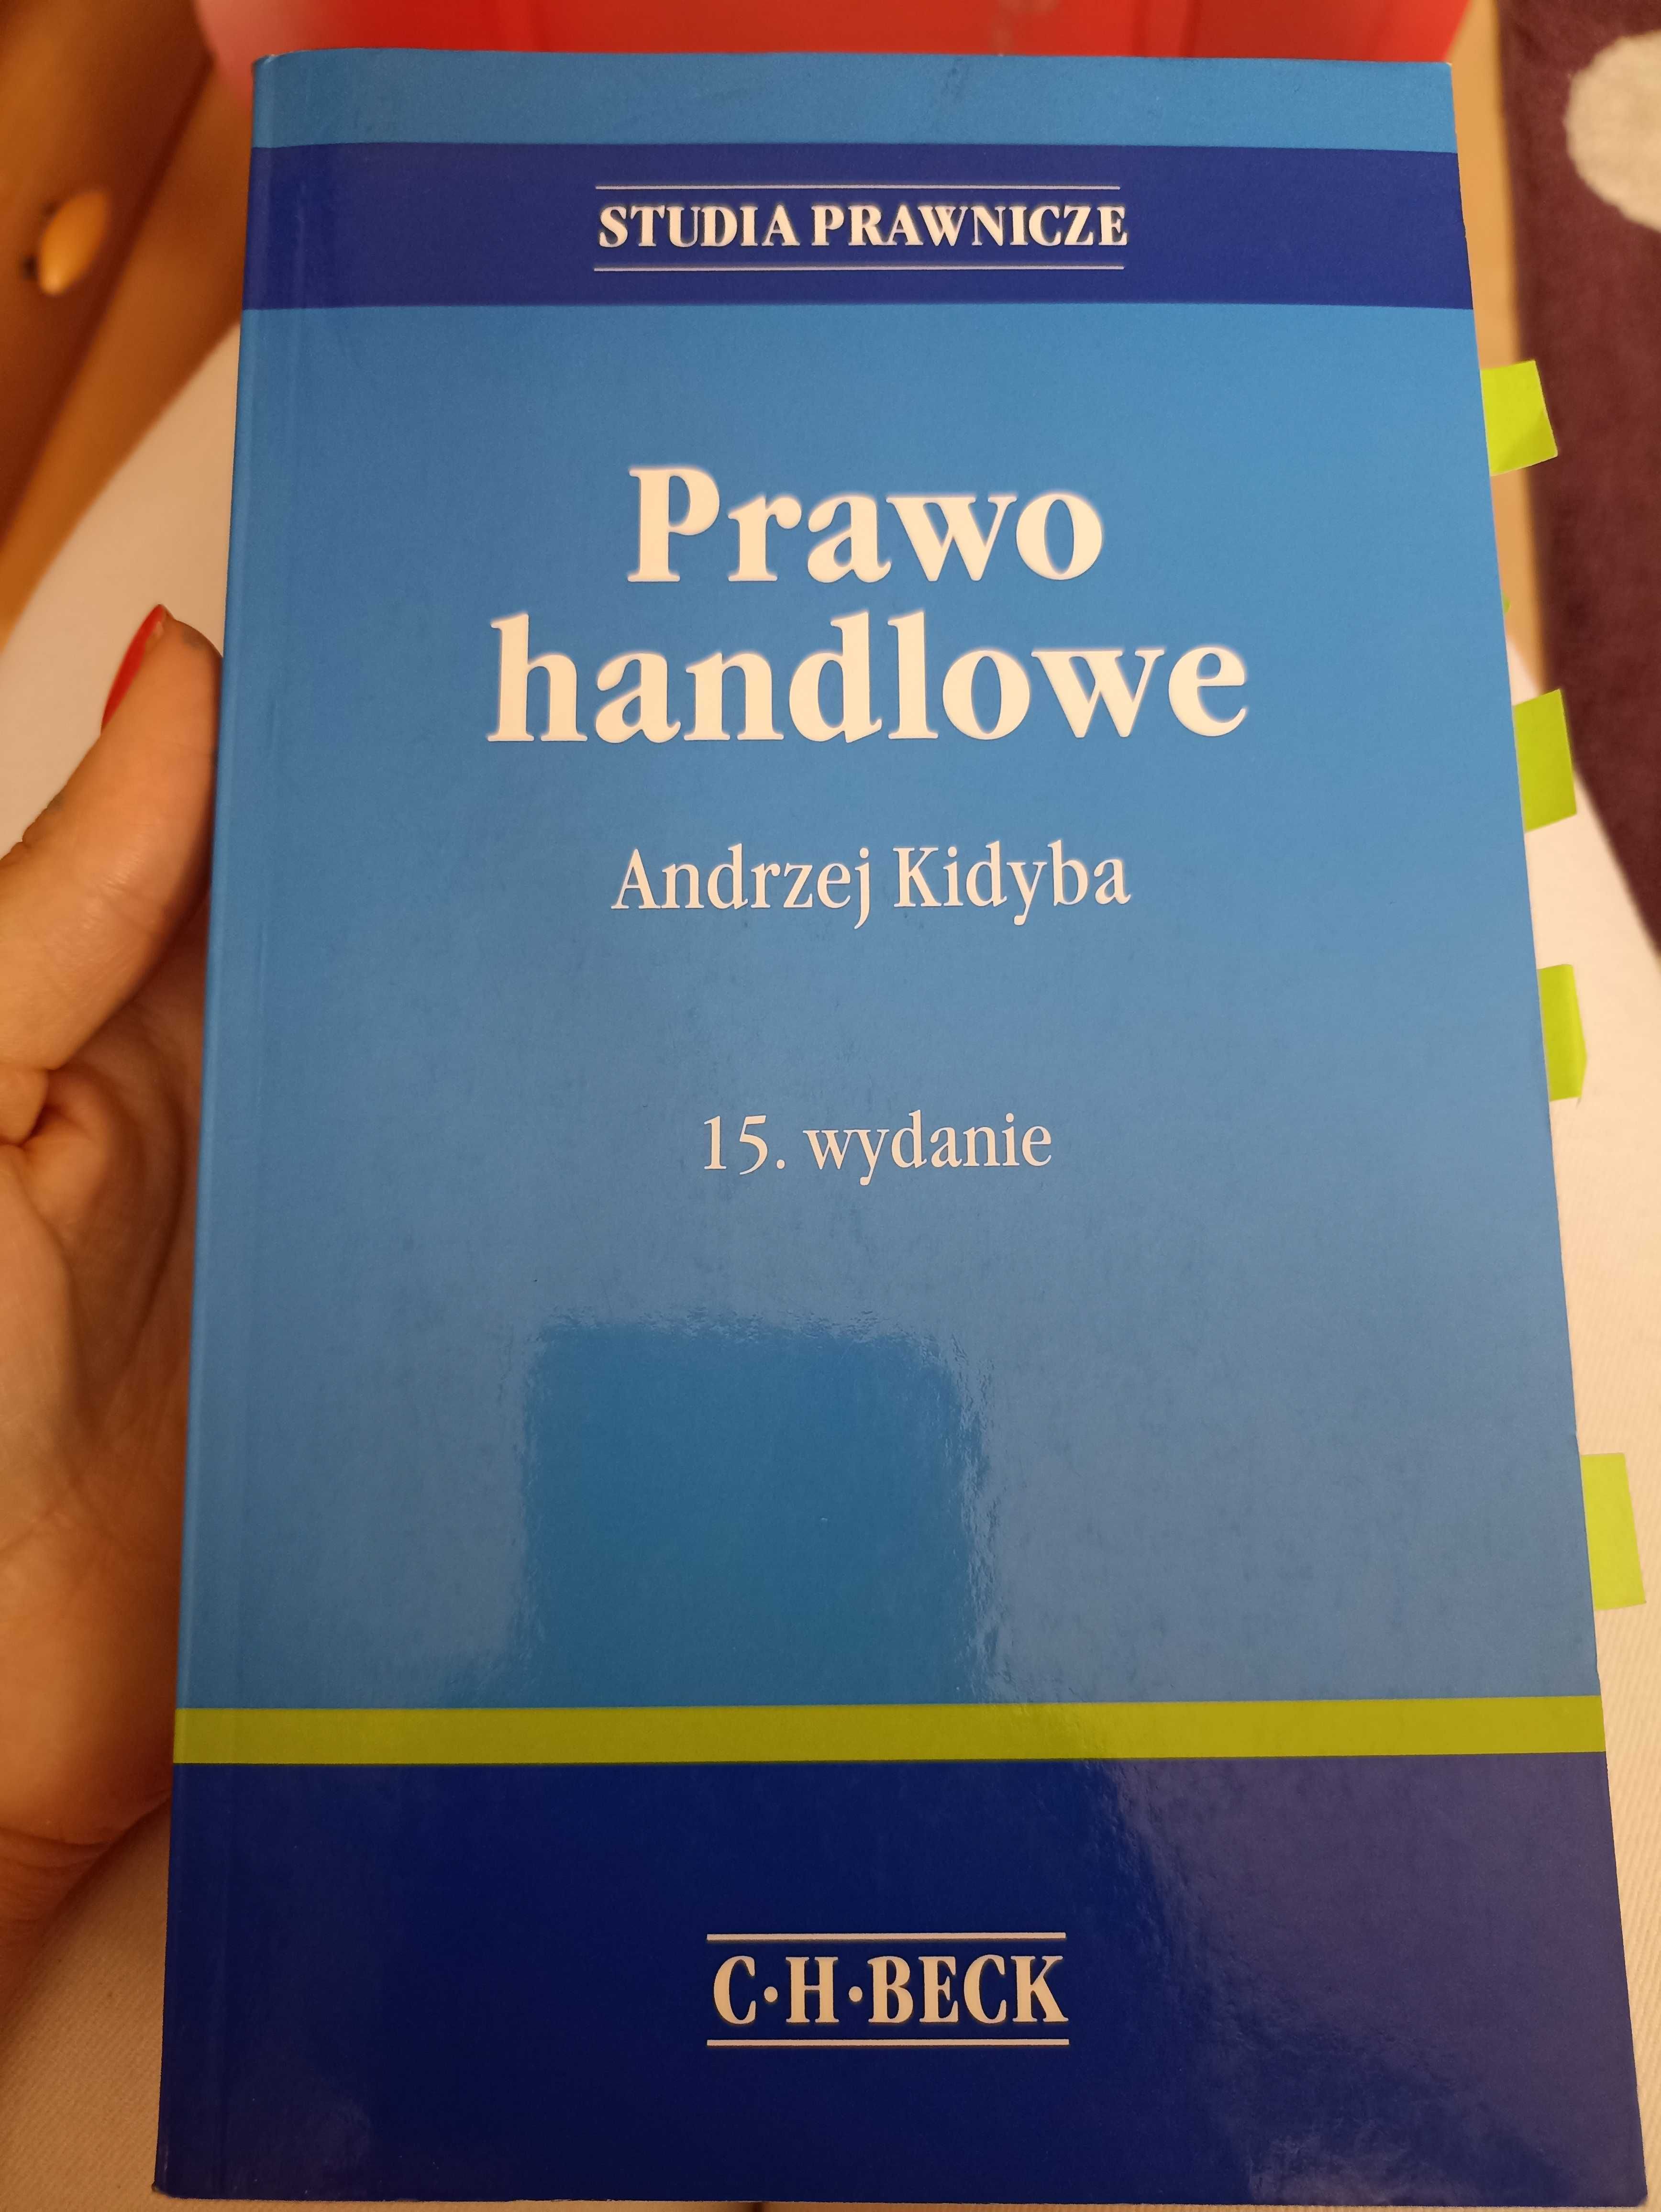 Prawo handlowe, podręcznik, Andrzej Kidyba C.H. Beck